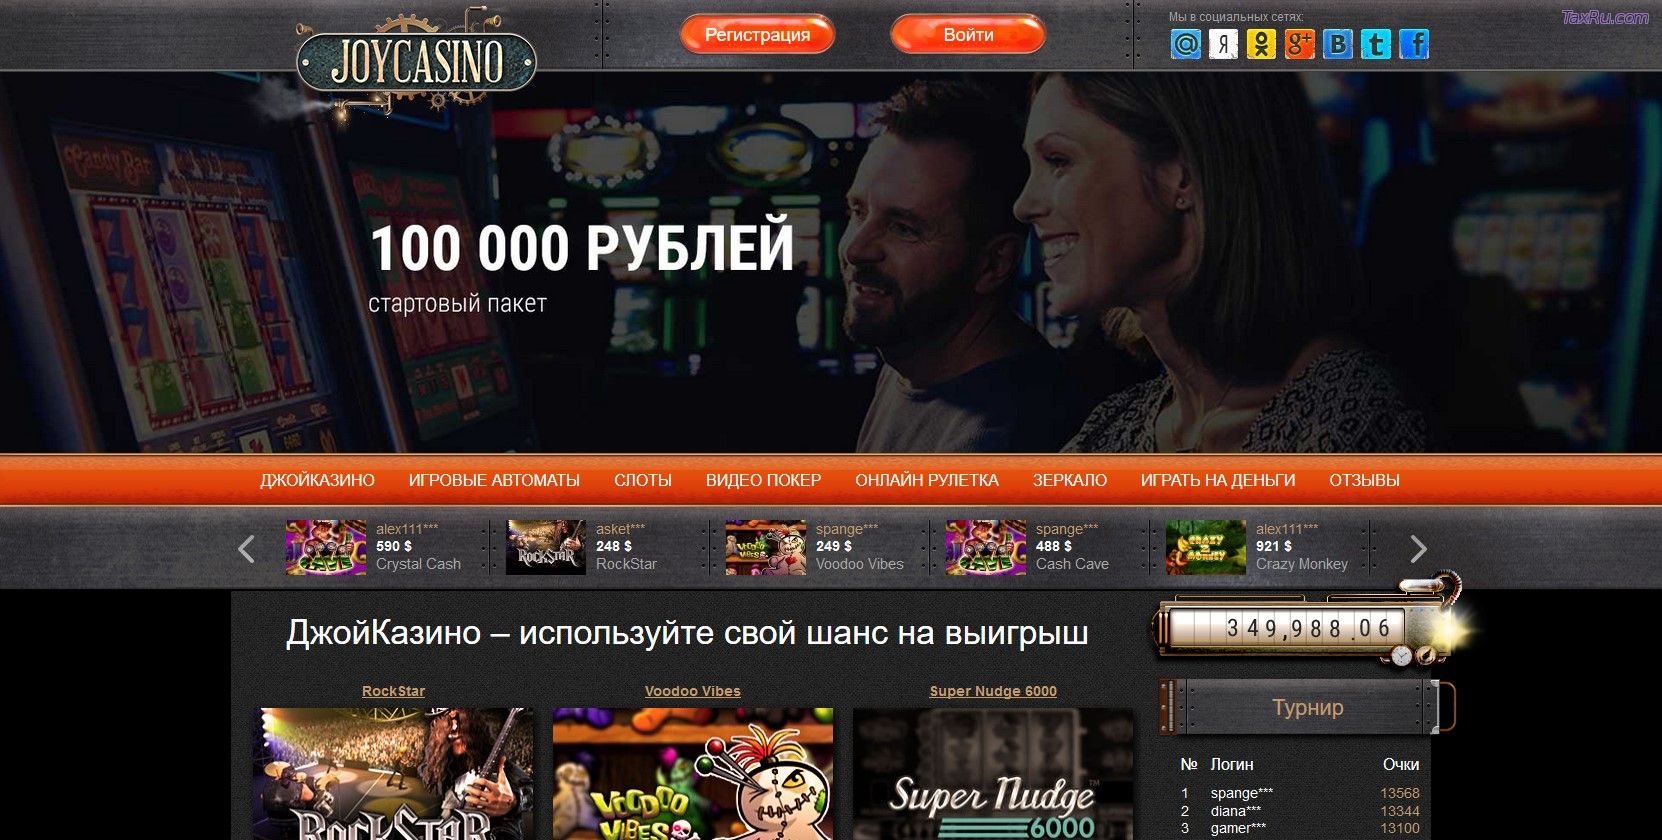 Joycasino официальный сайт отзывы о сайте знакомств моментальная лотерея 777 столото